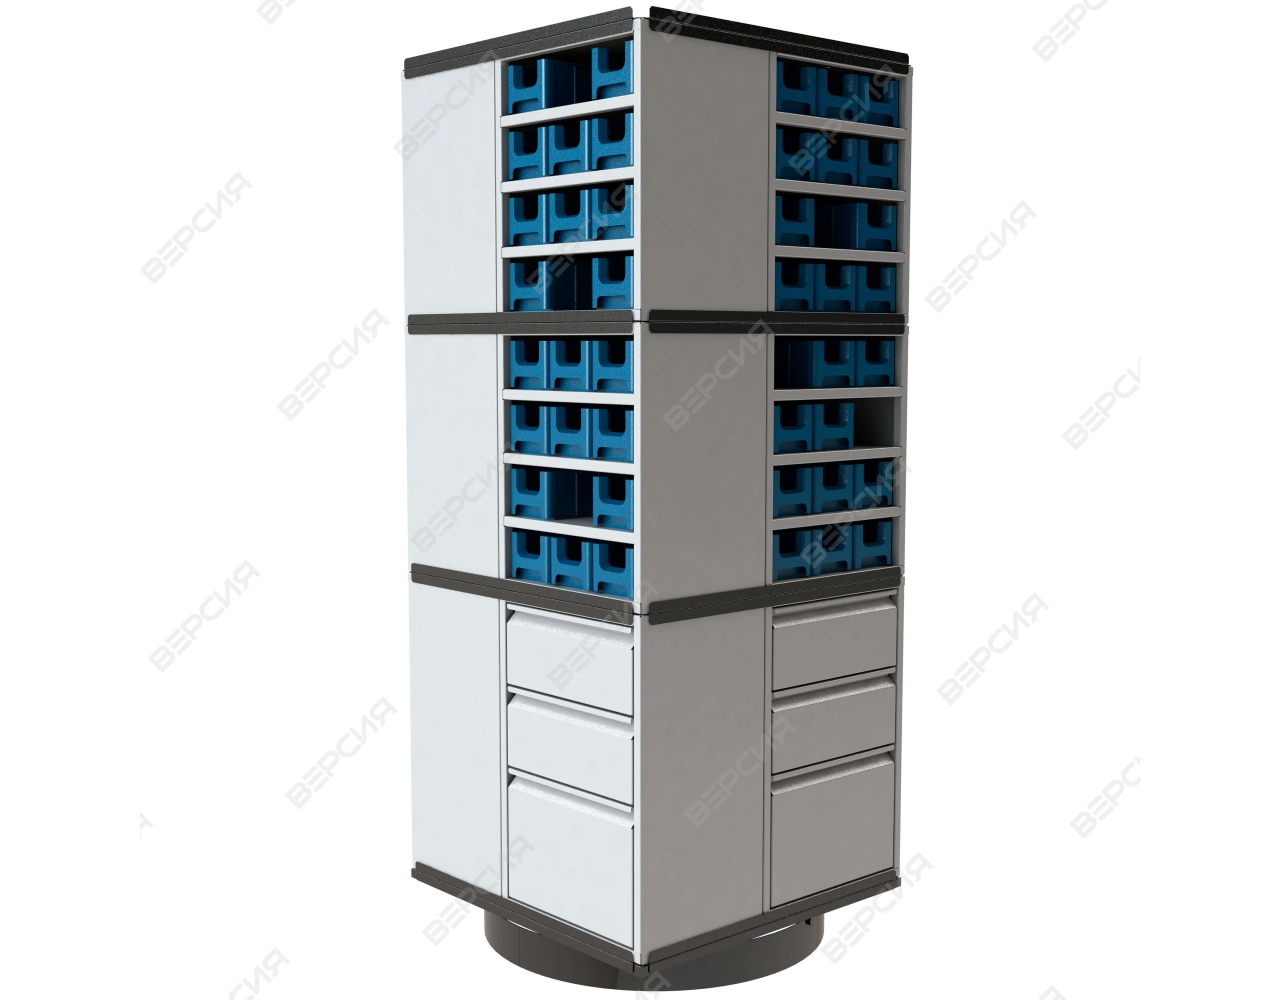 Поворотный шкаф - кассетница, кассетница поворотная, шкаф - кассетница для хранения метизов и комплектующих 